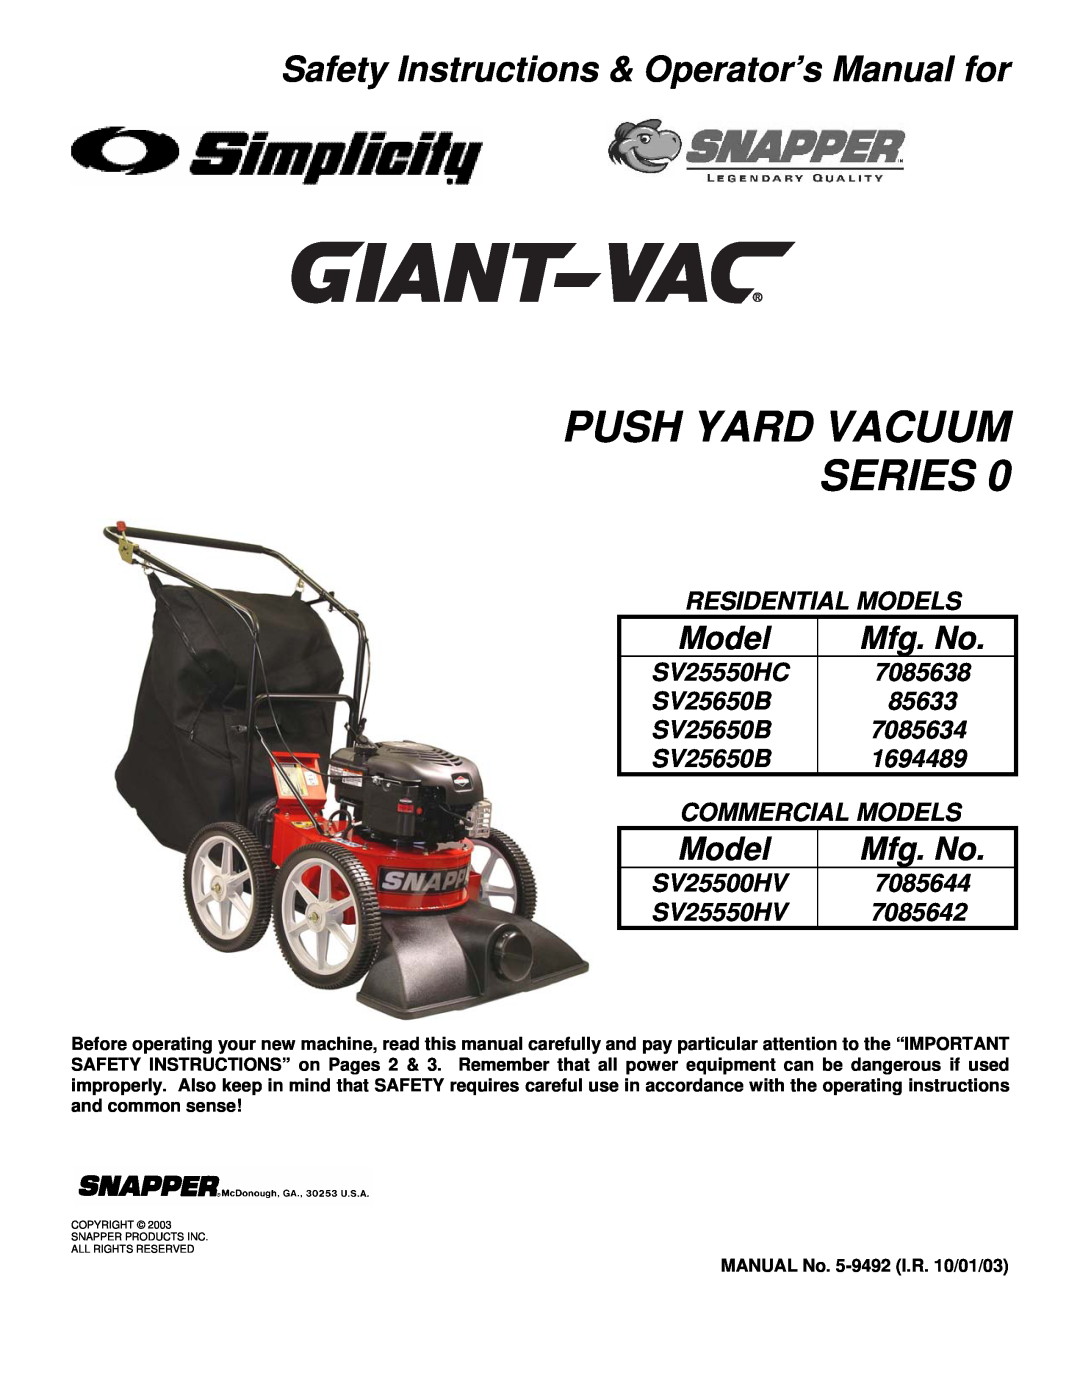 Snapper SV25550HC, SV25650B, SV25500HV, SV25550HV important safety instructions Push Yard Vacuum Series, Model, Mfg. No 